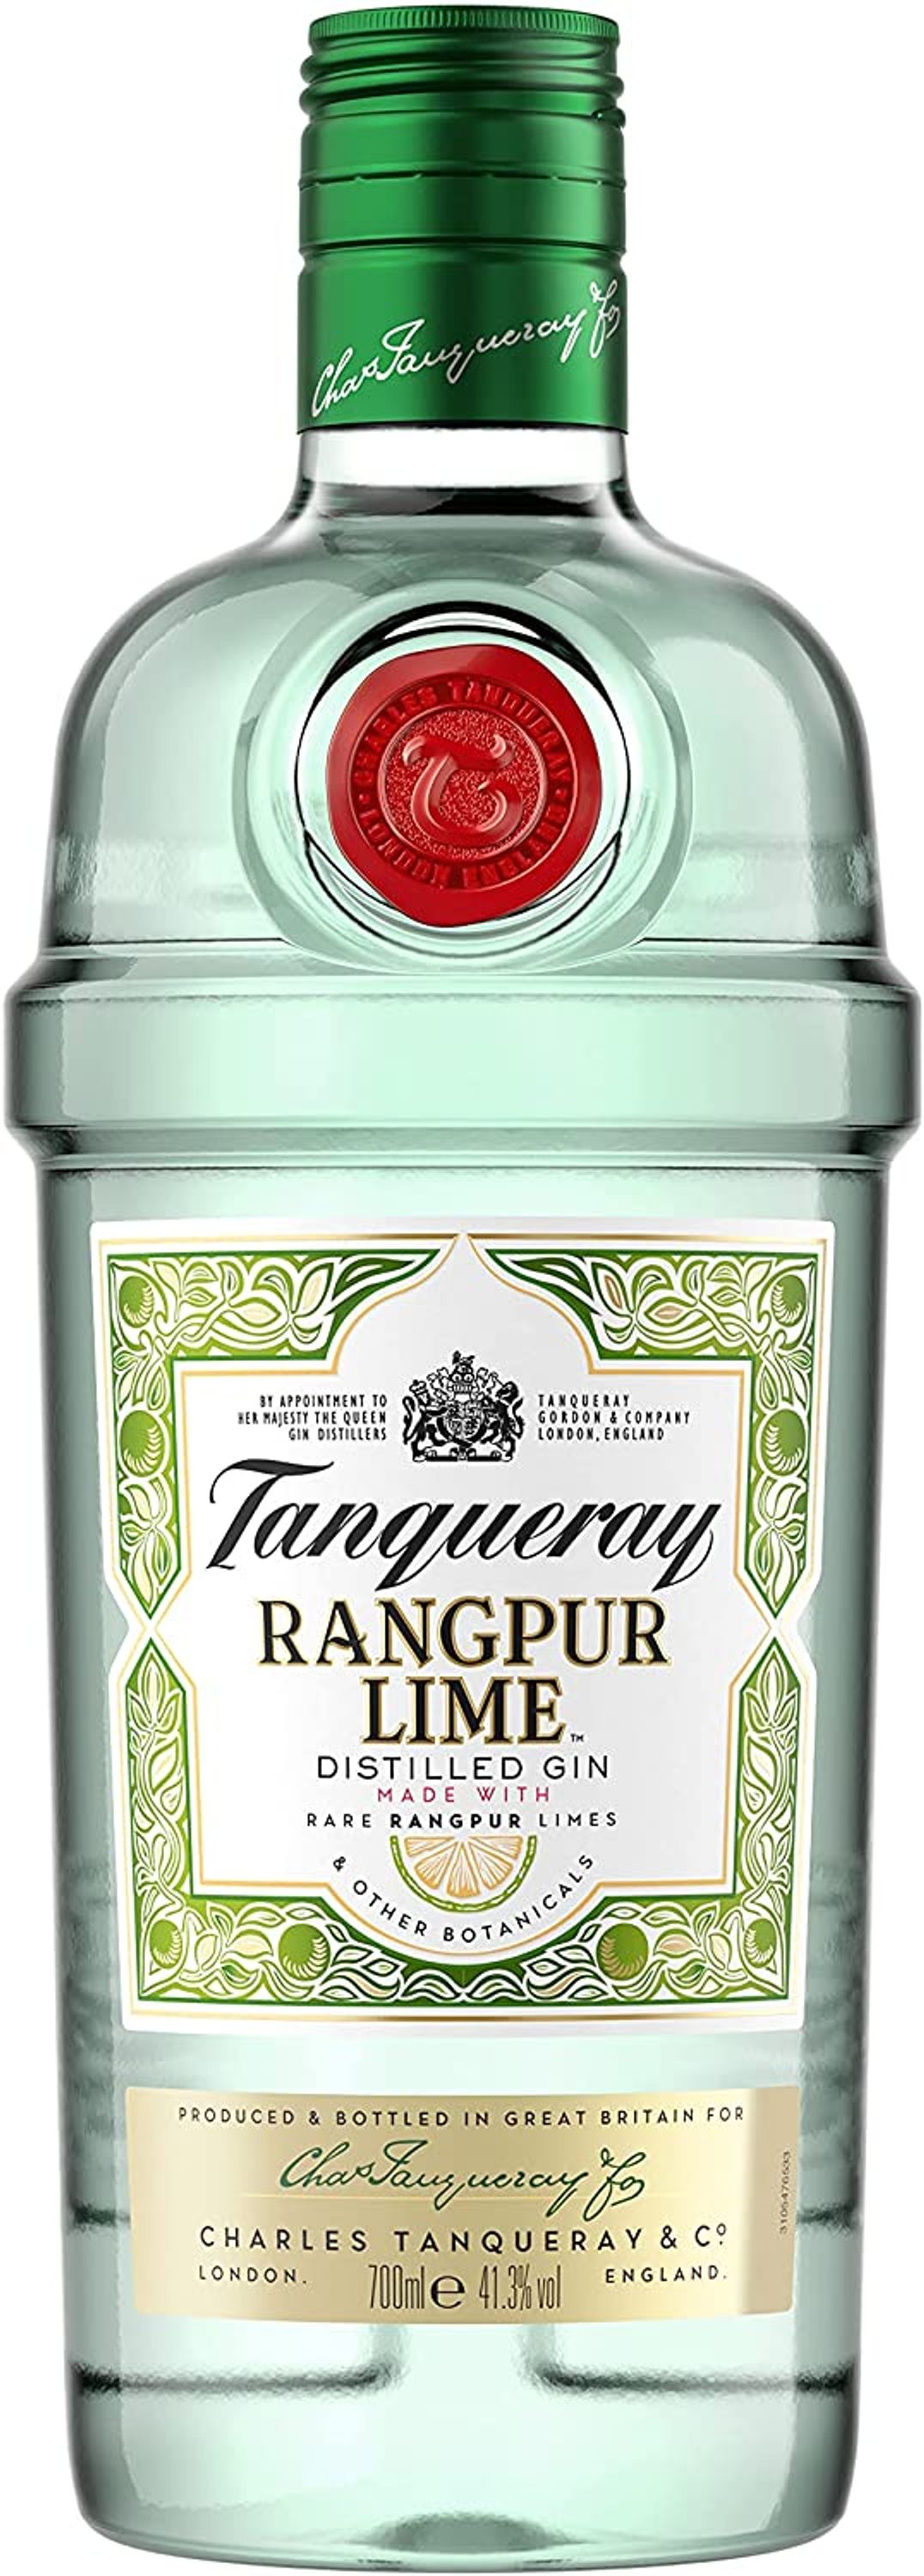 Tanqueray Rangpur Gin 0.7l, alc. 41.3% ABV, Gin England